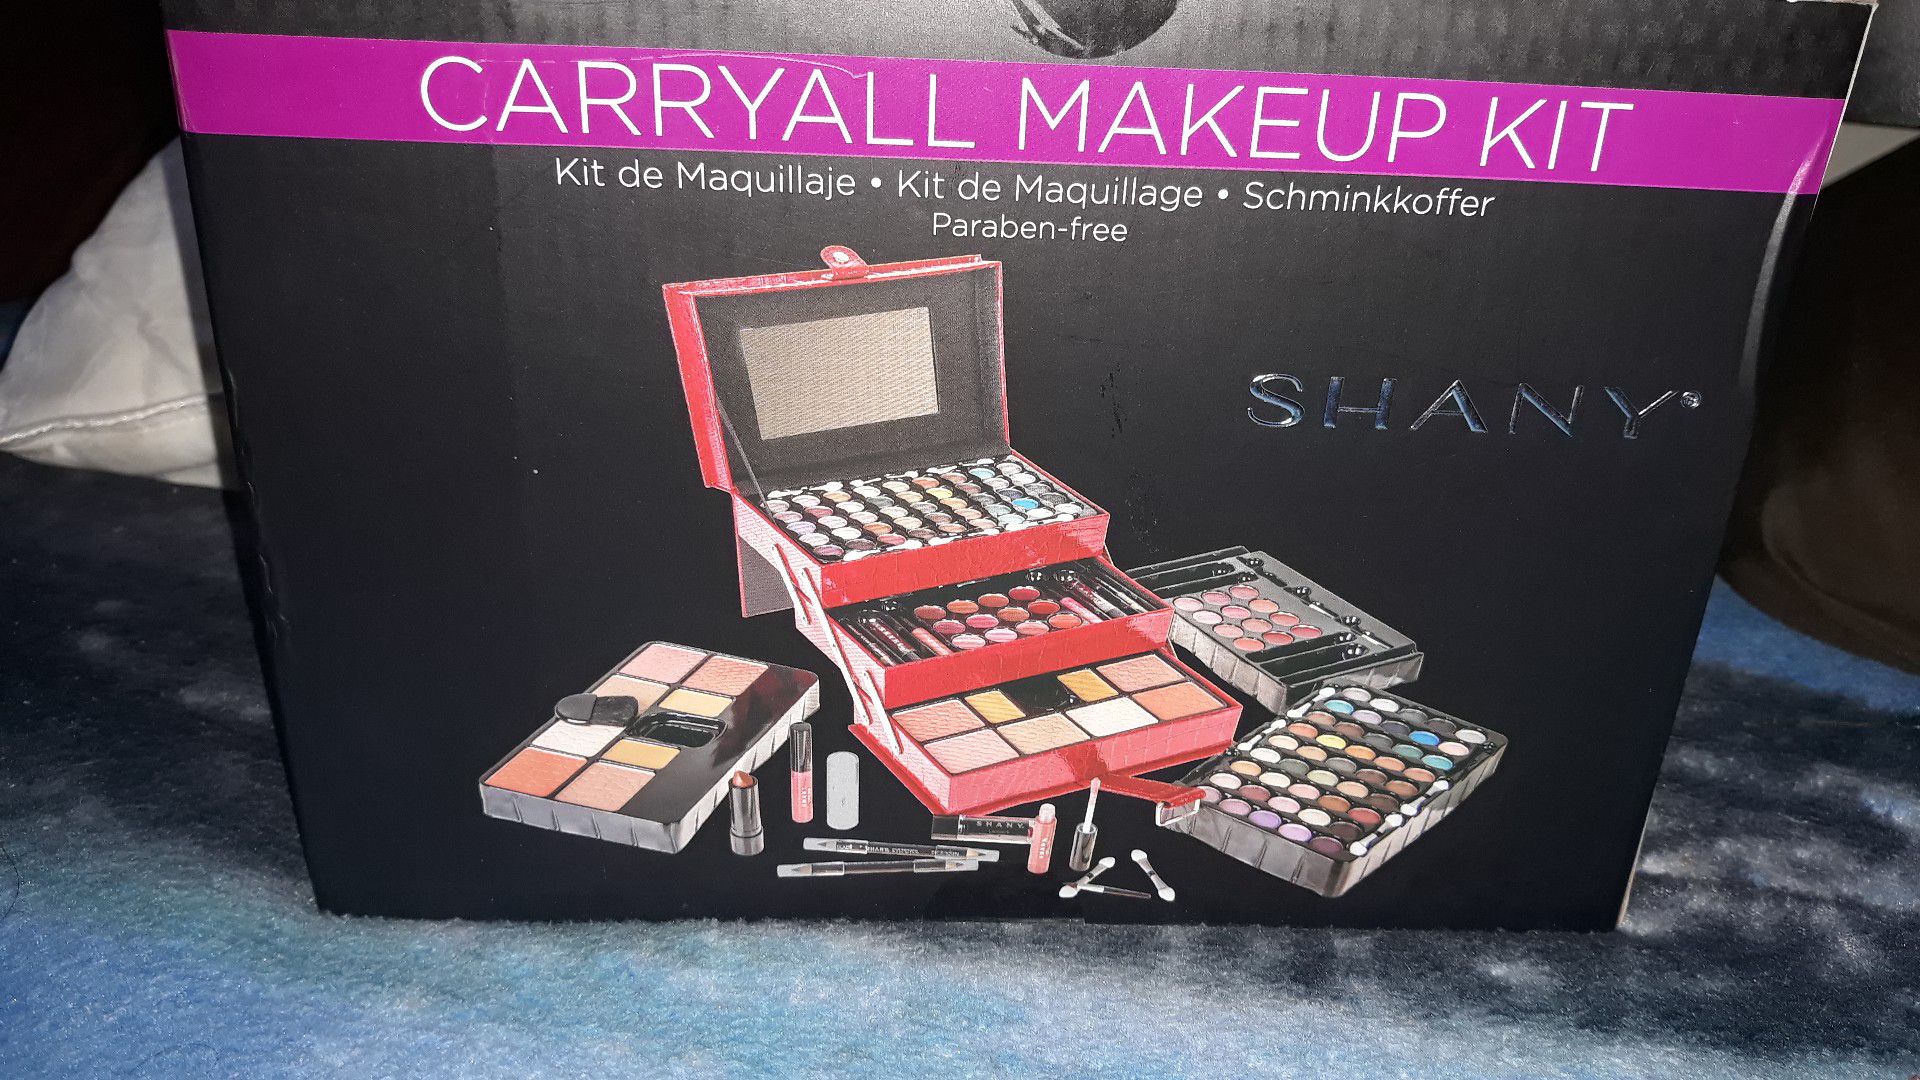 Carryall Makeup kit